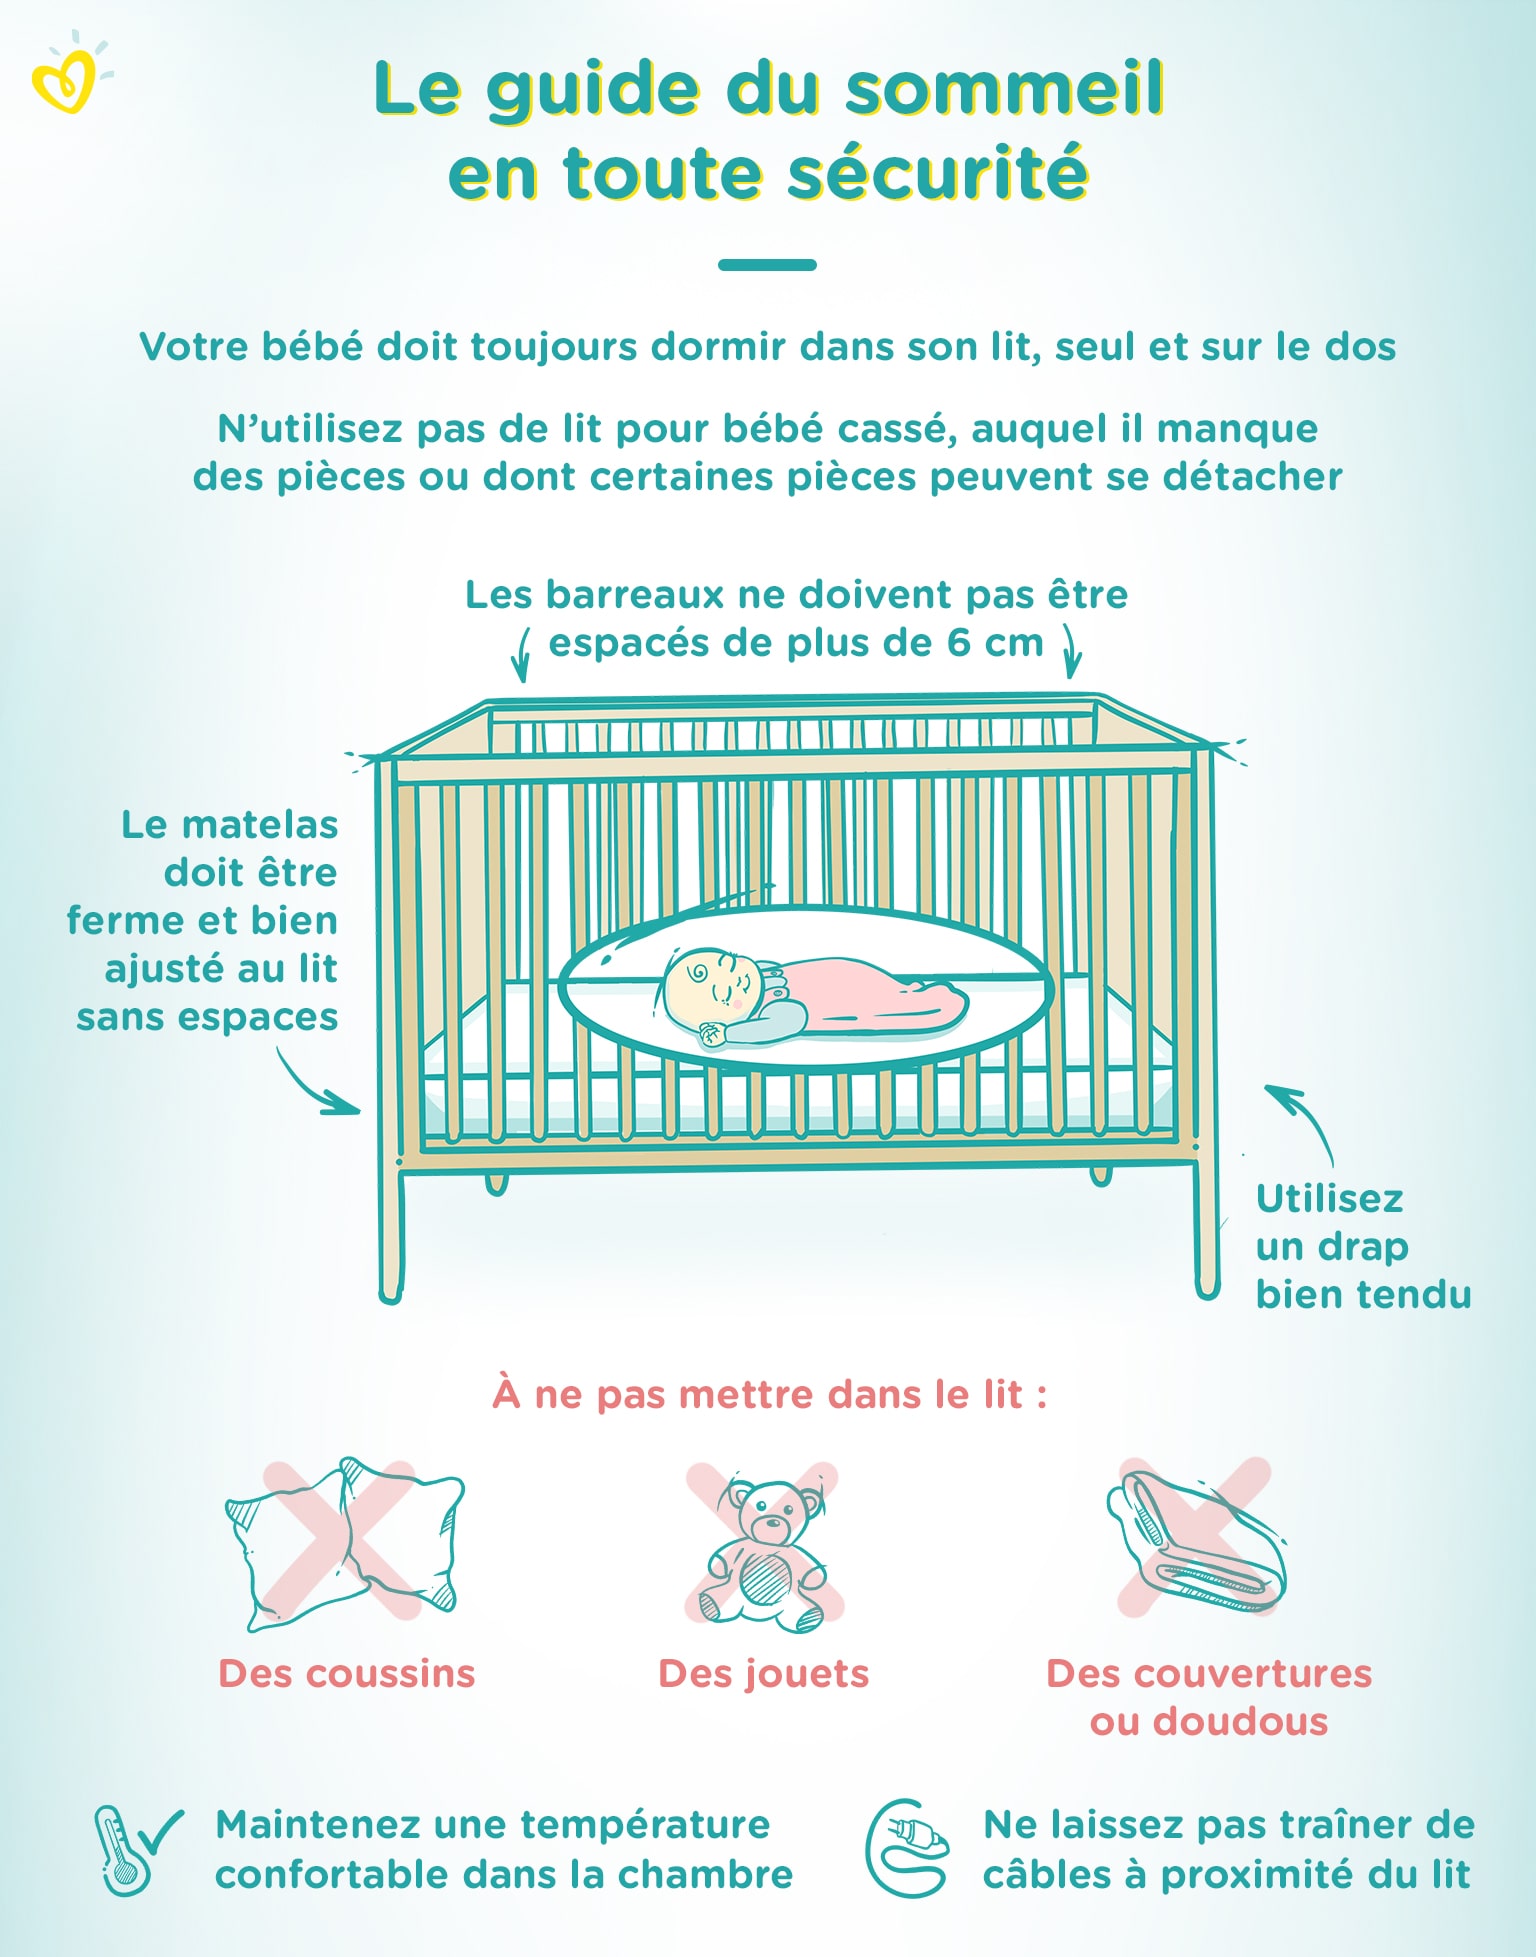 Le sommeil de bébé en toute sécurité : berceau, gigoteuse, comment